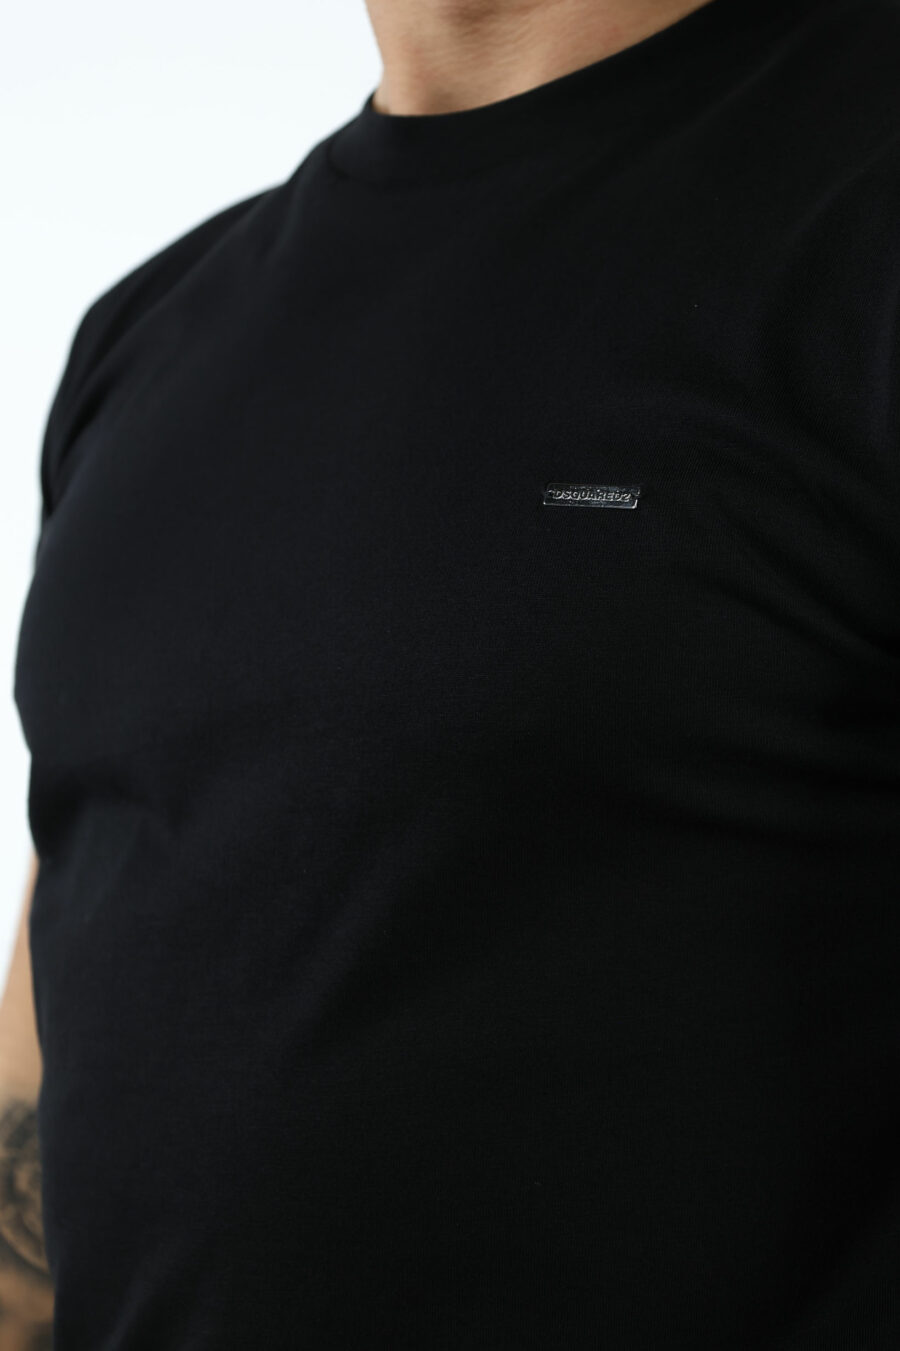 Camiseta negra con logo en placa pequeña - 106900